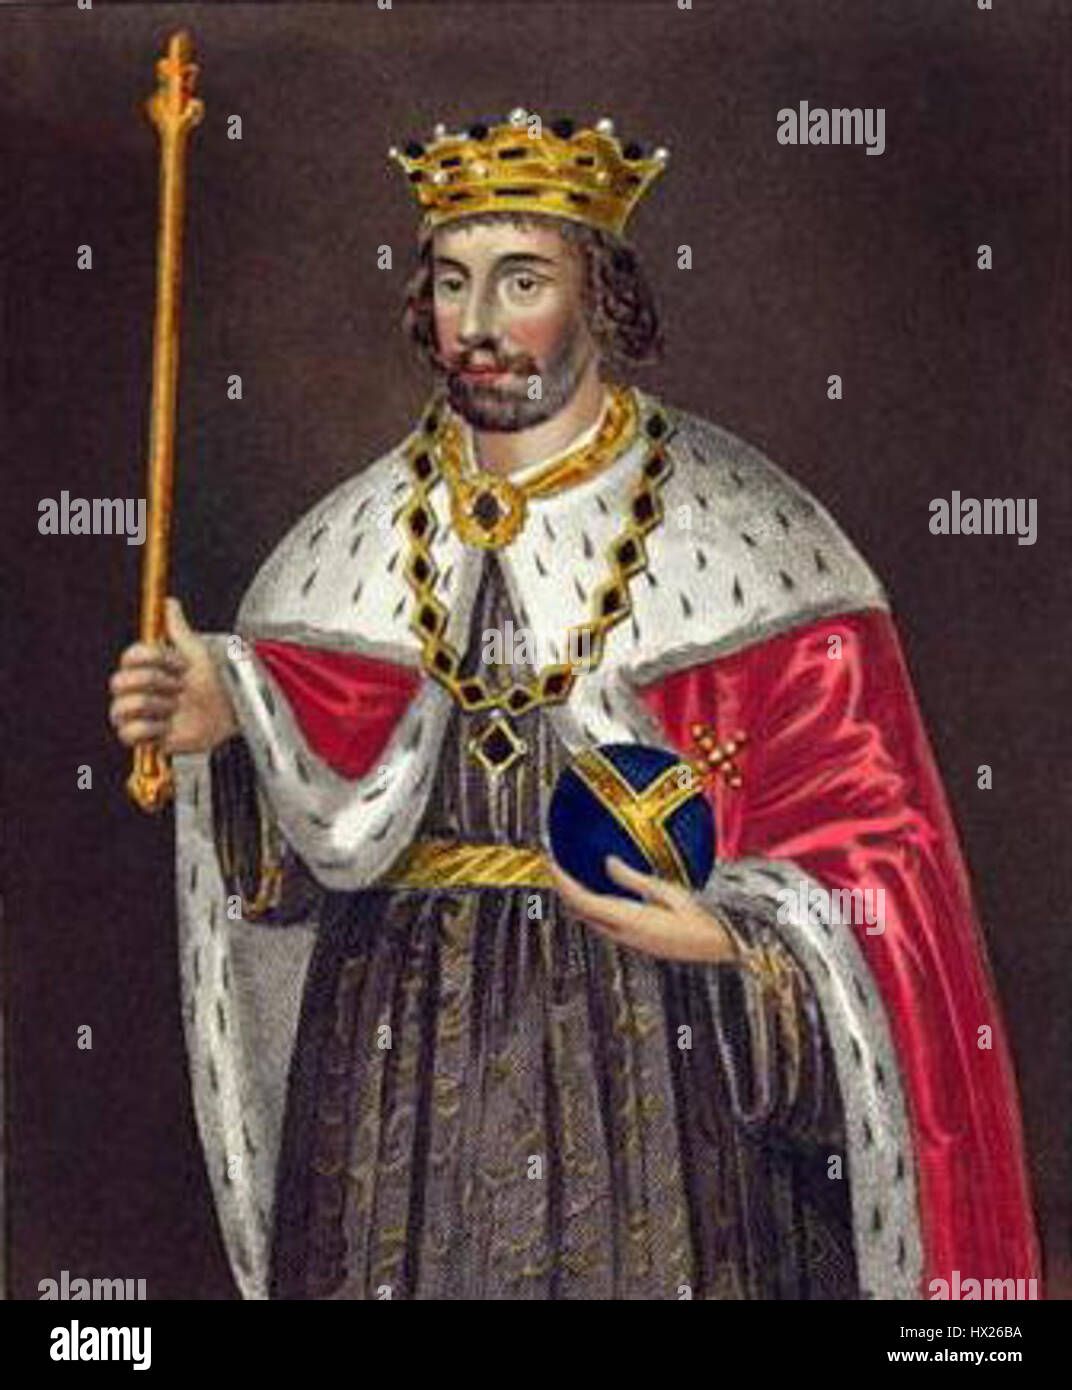 Le roi Édouard II d'Angleterre Banque D'Images